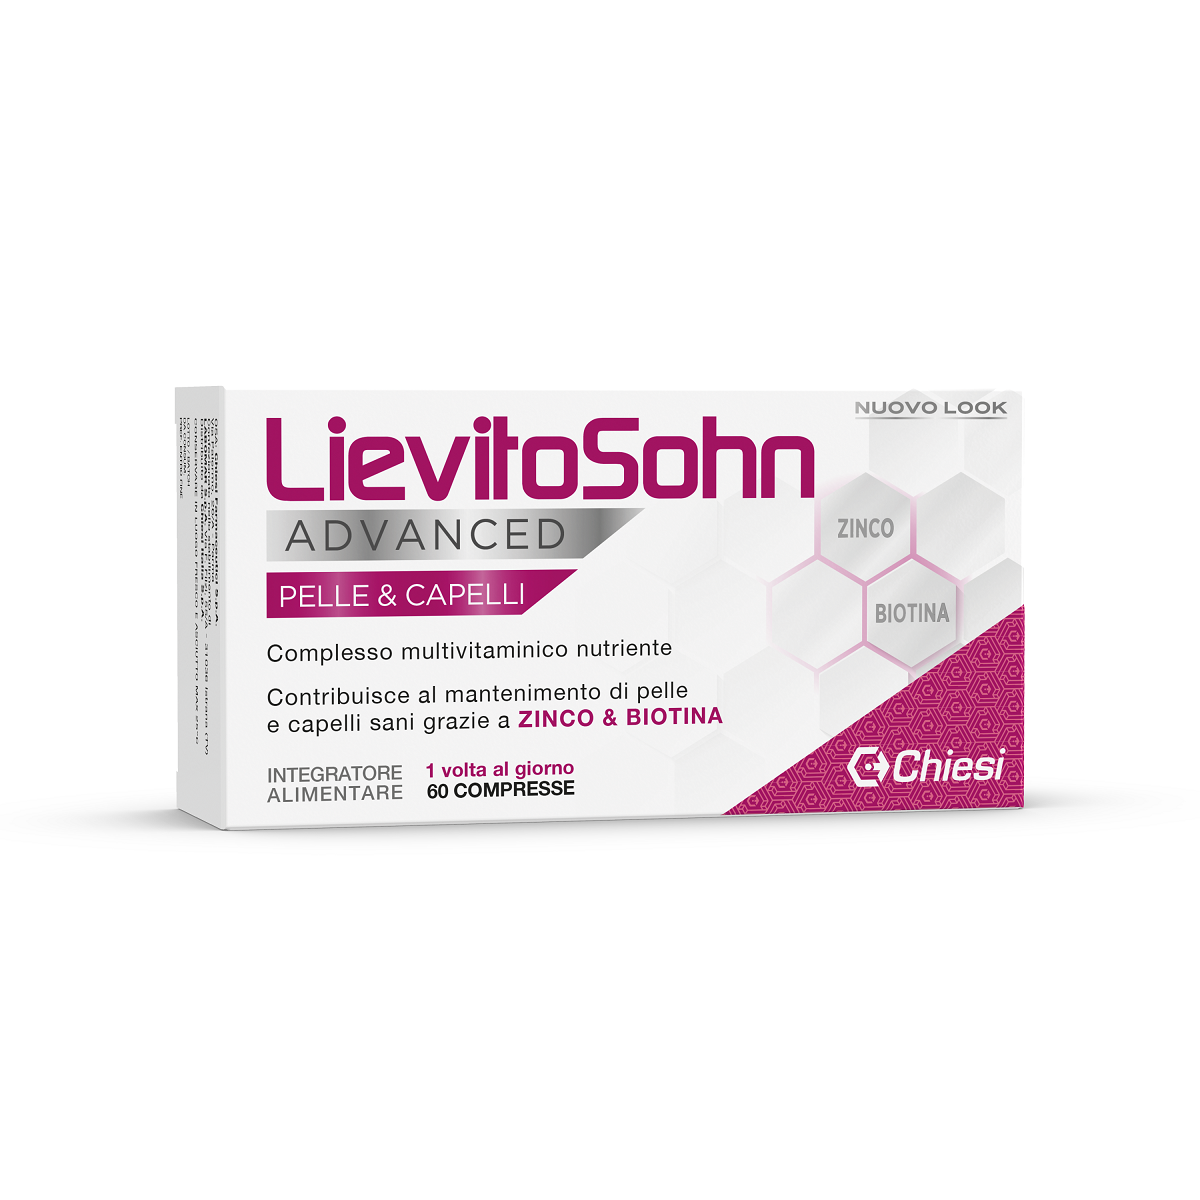 Image of Lievitosohn Advanced Integratore Alimentare Senza Glutine 60 Compresse